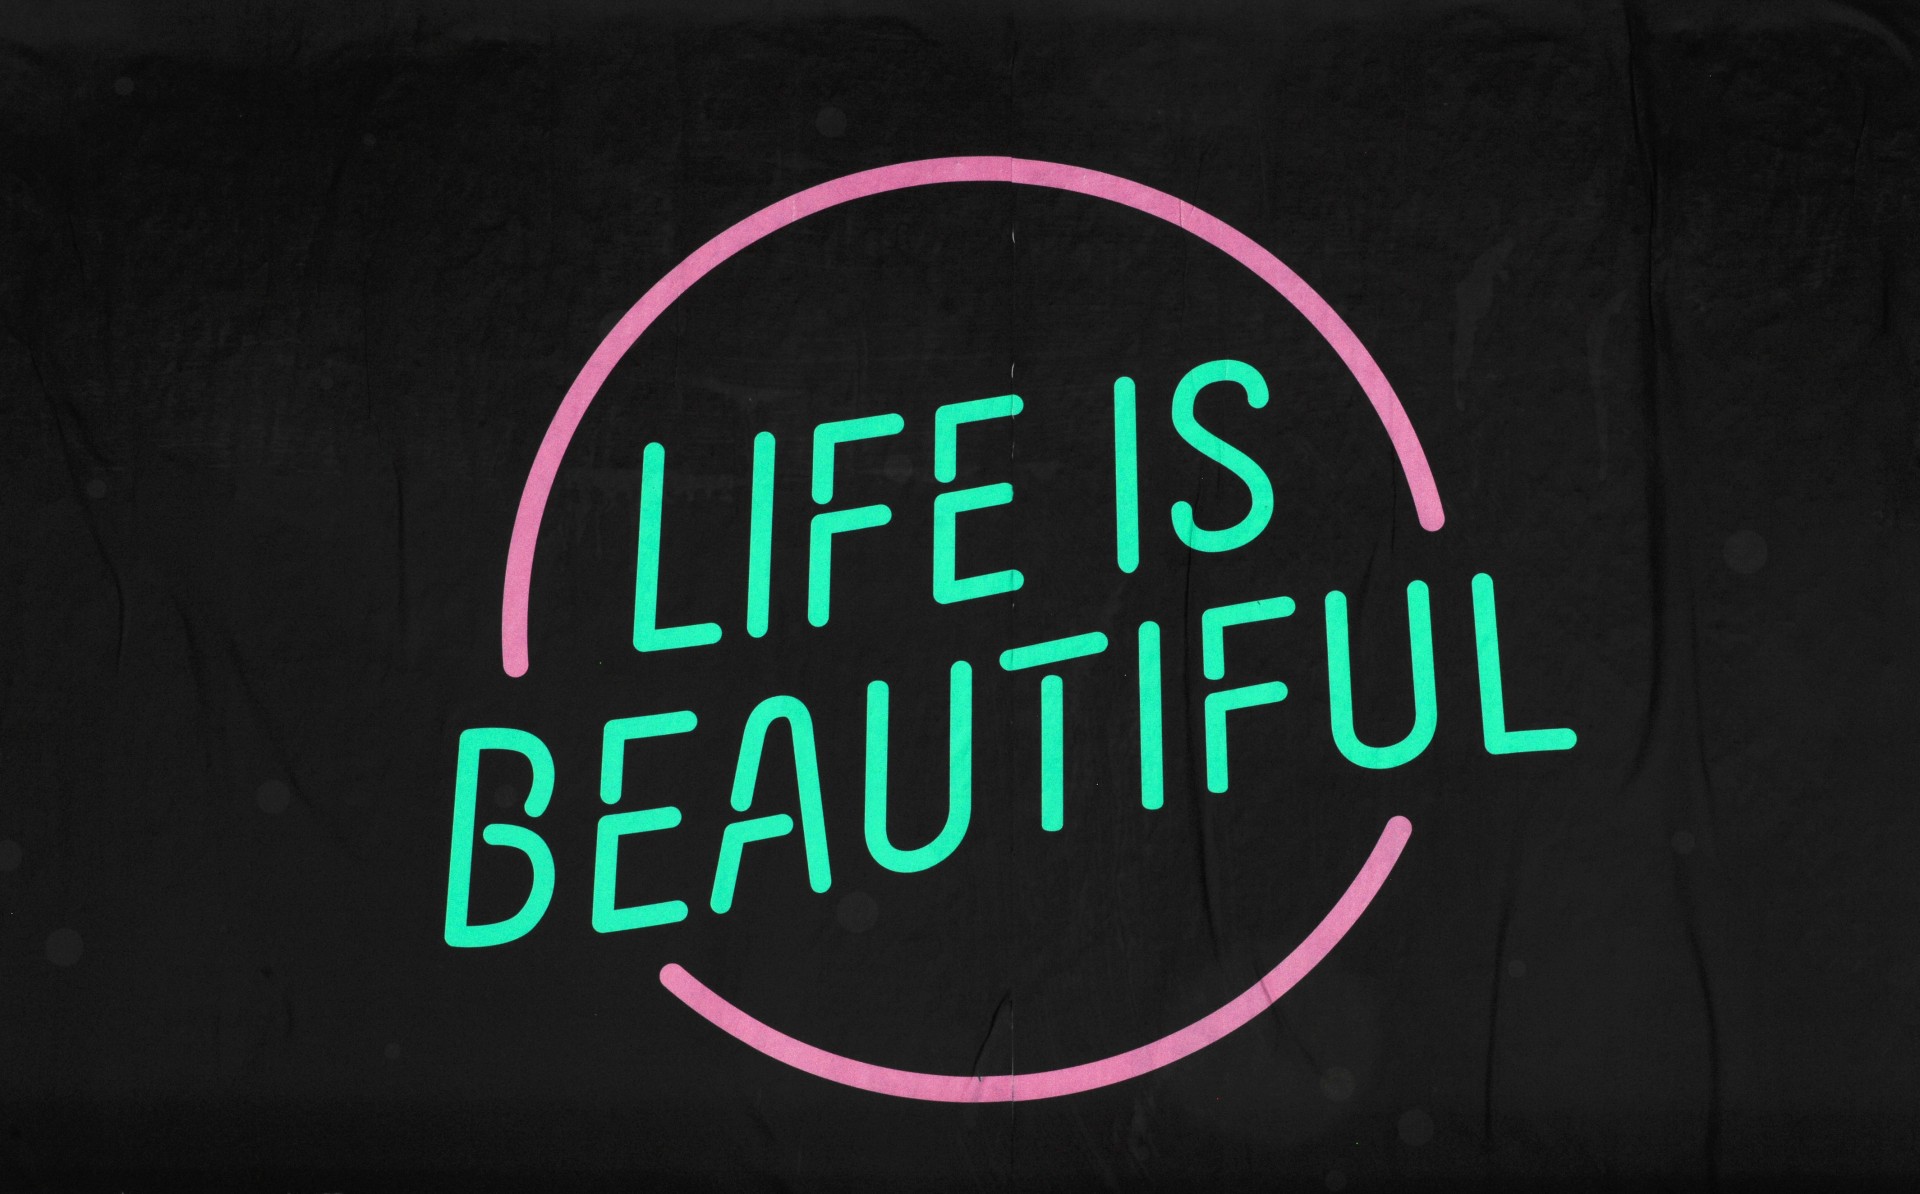 Life is life год. Бьютифул лайф. Life is beautiful. Бьютифул лайф картинки. Life is beautiful обои.